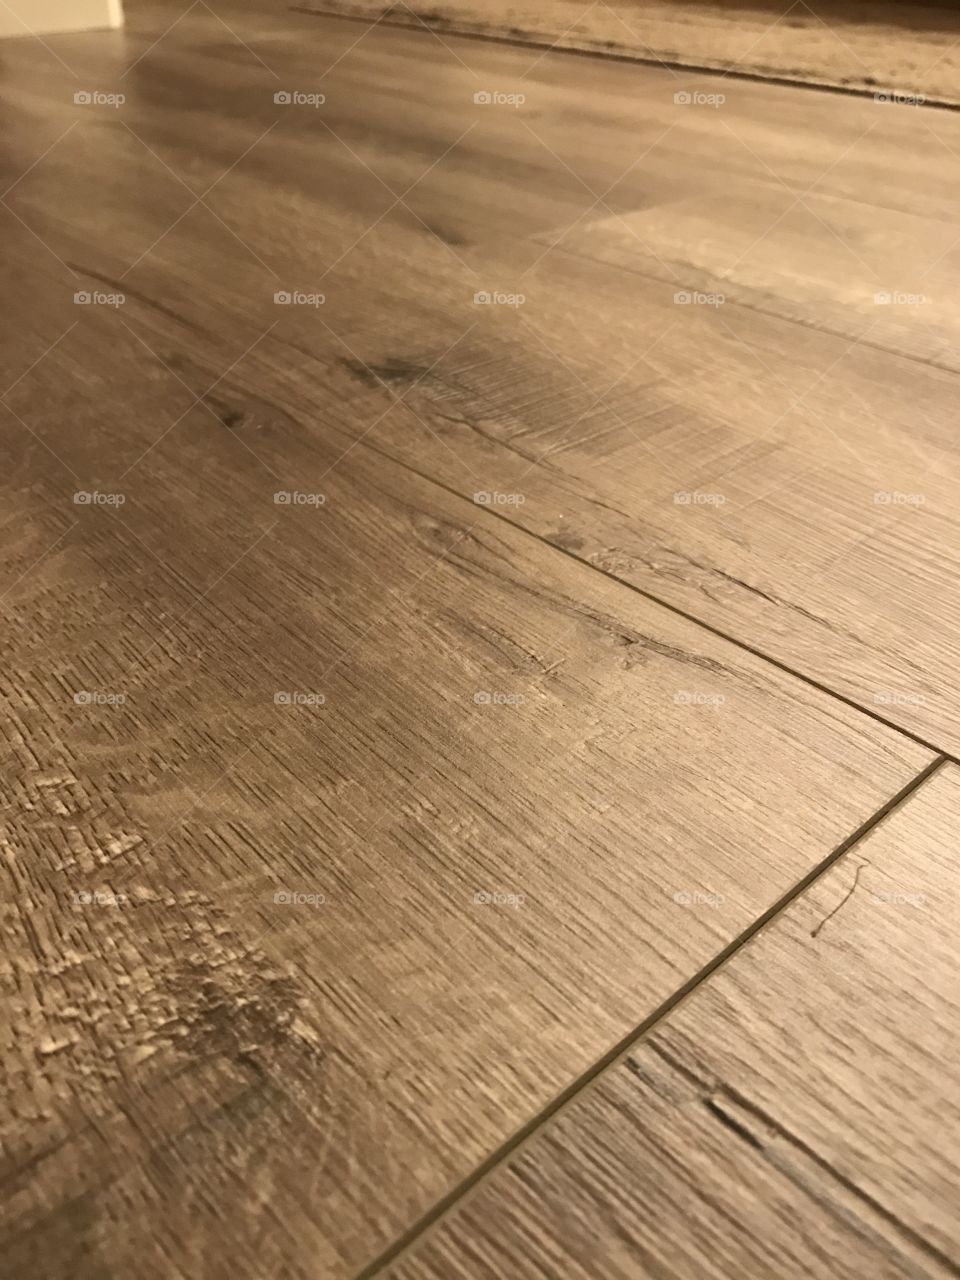 New floor